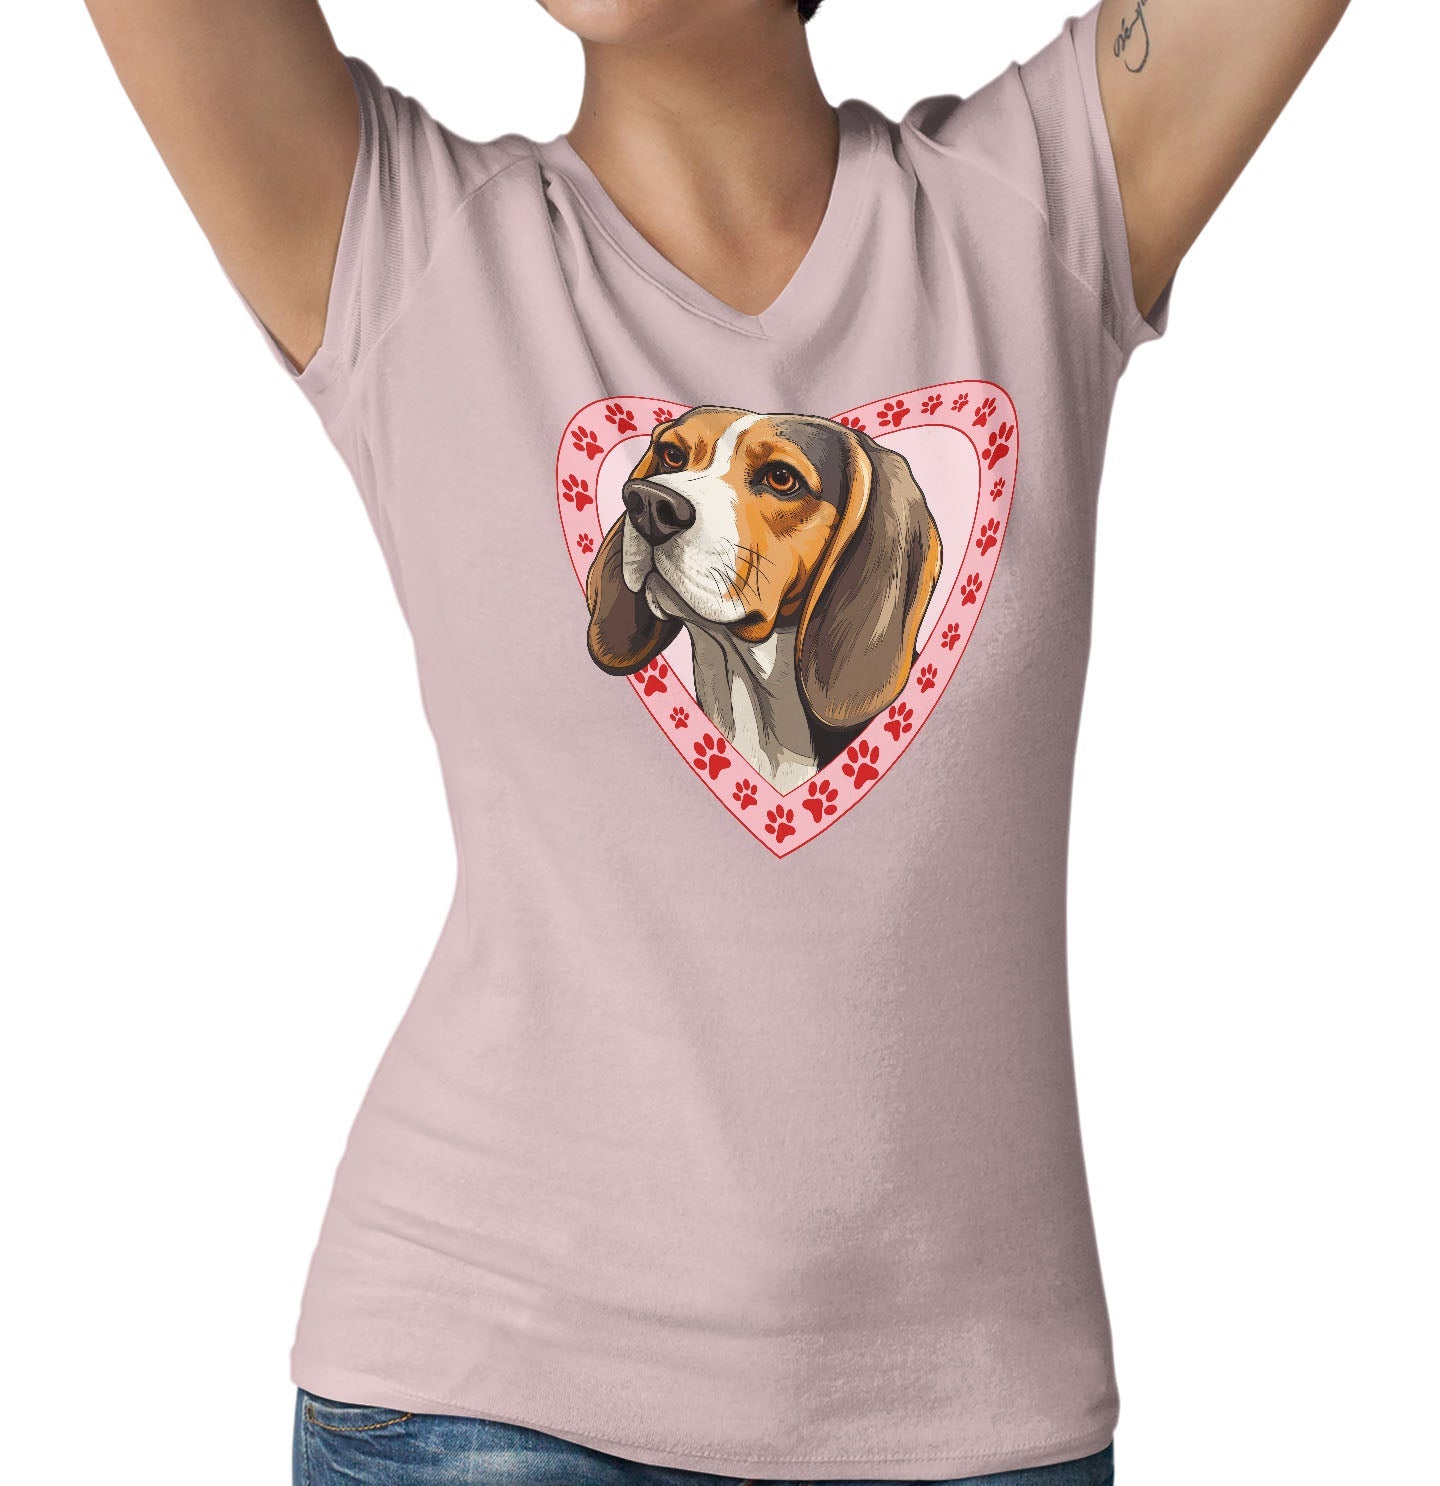 Beagle Illustration In Heart - Women's V-Neck T-Shirt